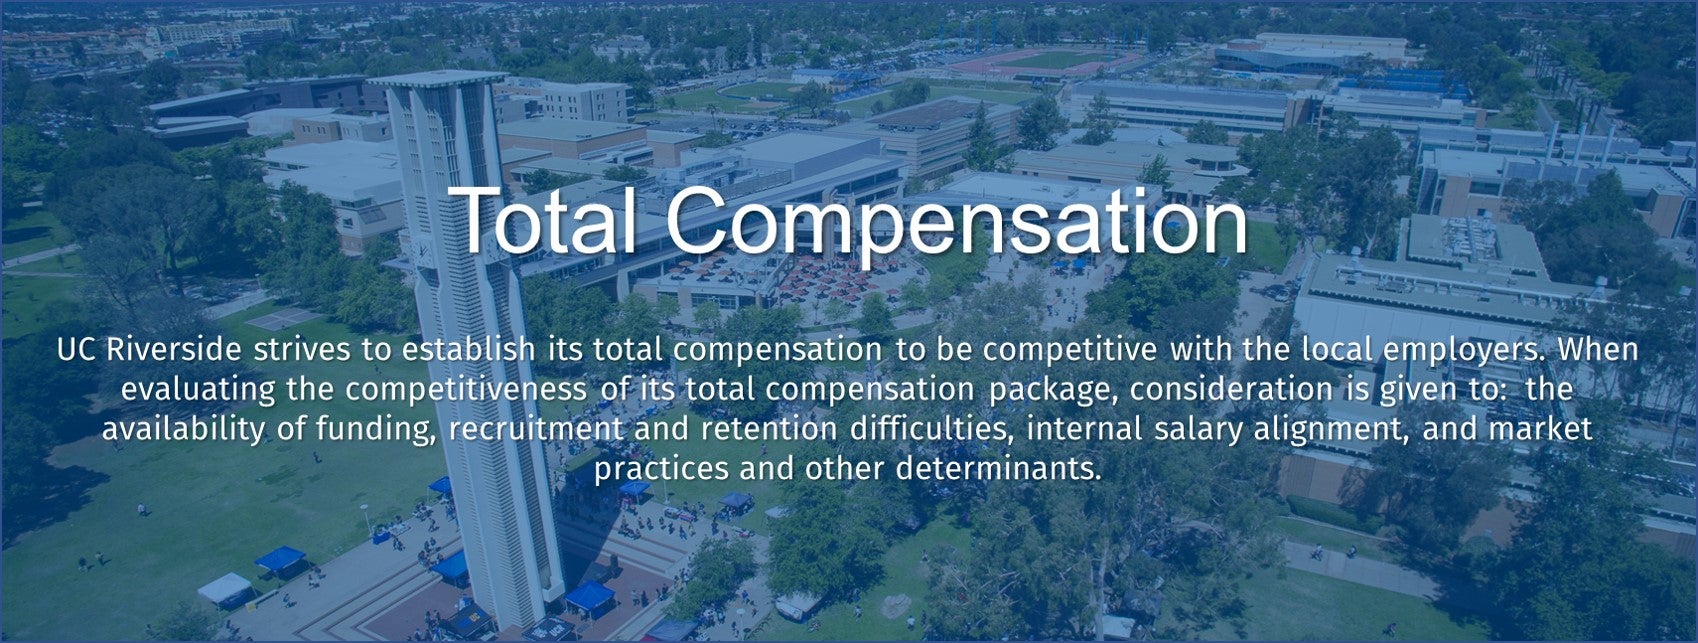 Total Compensation webpage banner